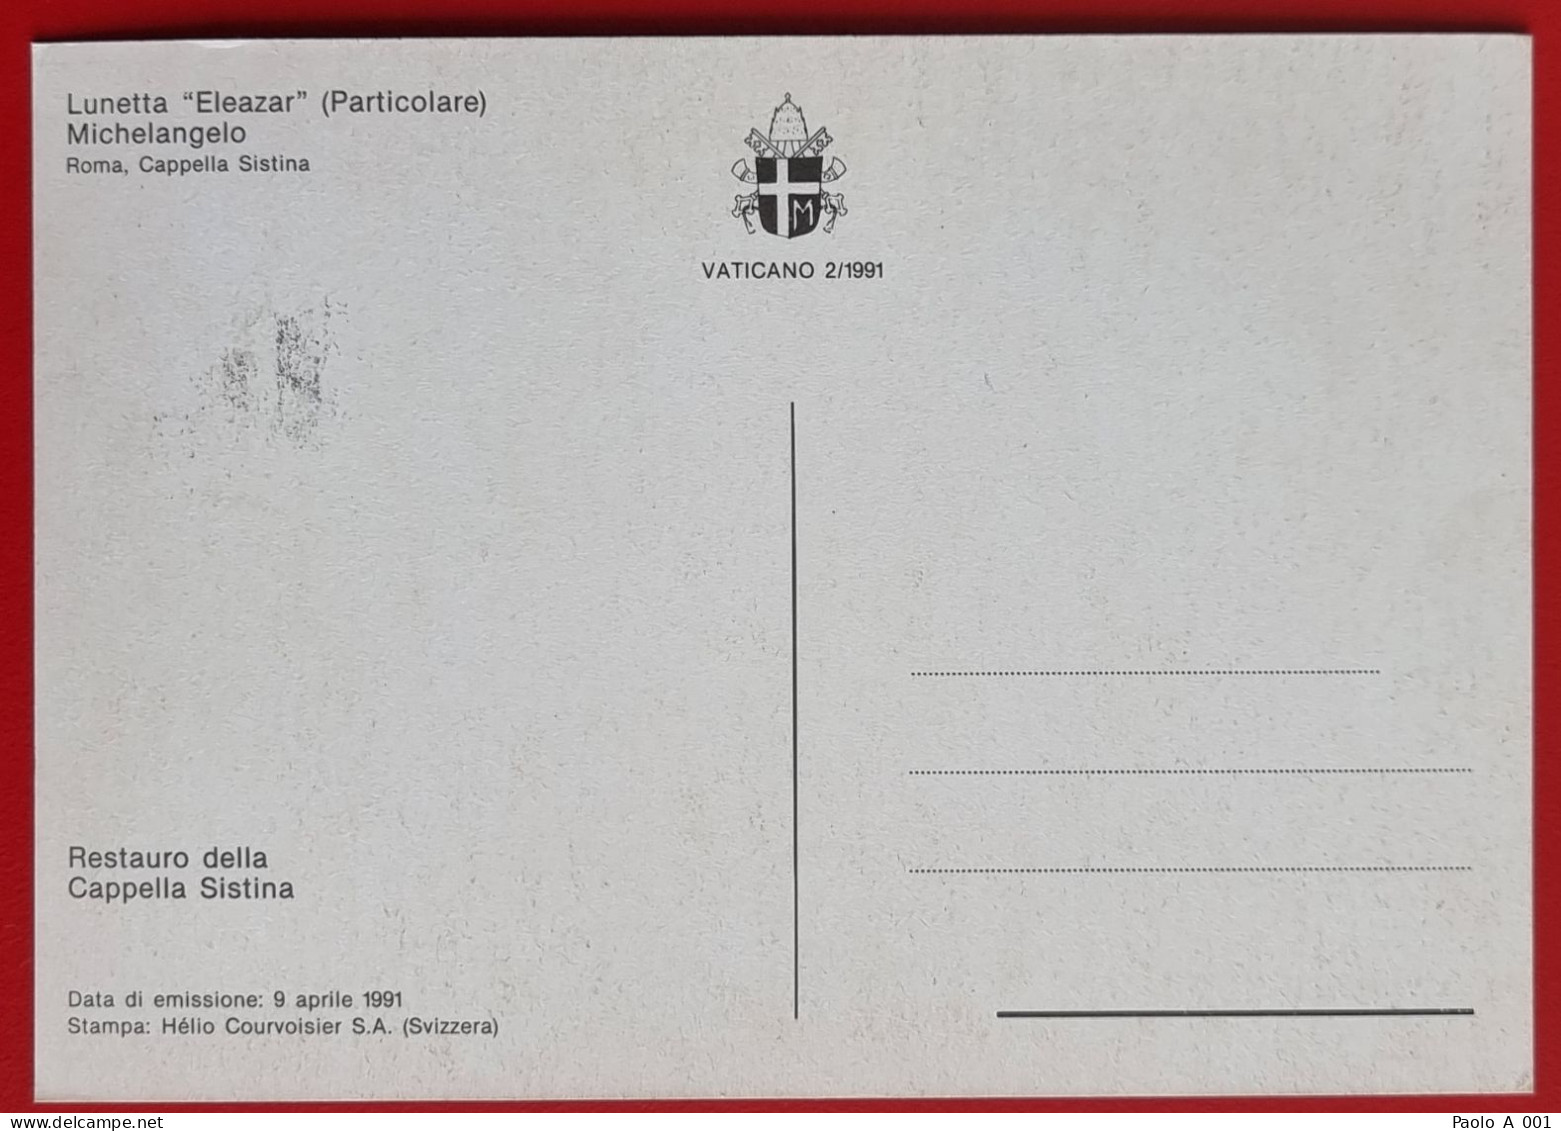 VATICANO VATIKAN VATICAN 1991 LUNETTA ELEAZAR CAPPELLA SISTINA SISTINE CHAPEL MAXIMUM CARD - Briefe U. Dokumente